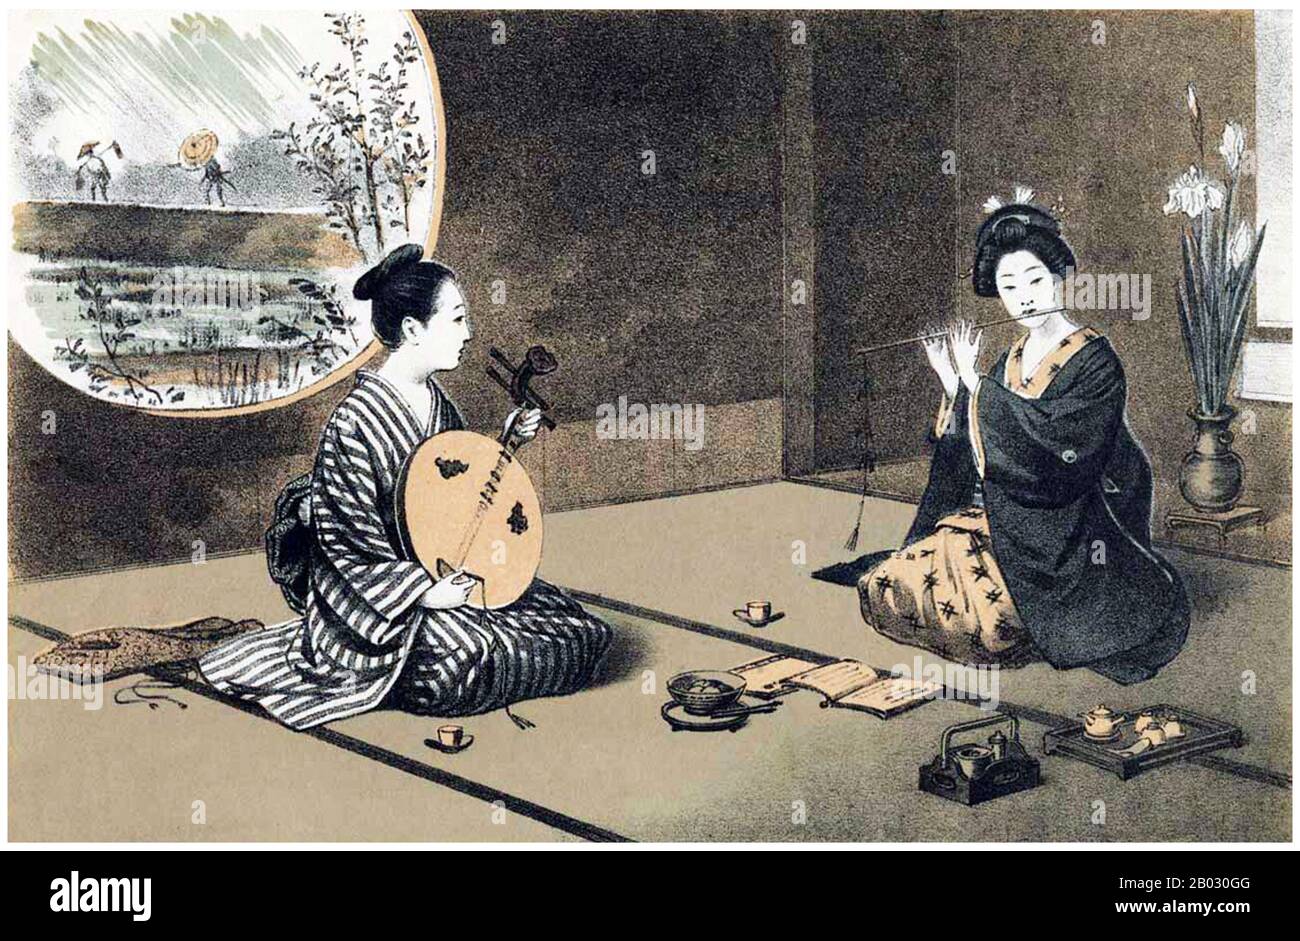 Le musicien de gauche joue un gekkin ou un luth chinois (yueqin), tandis que celui de droite l'accompagne d'une flûte kiyoshi ou bambou (flûte Qingdi ou 'Qing'). Ces deux instruments sont associés à la musique chinoise de la dynastie Qing au Japon traditionnel. Banque D'Images